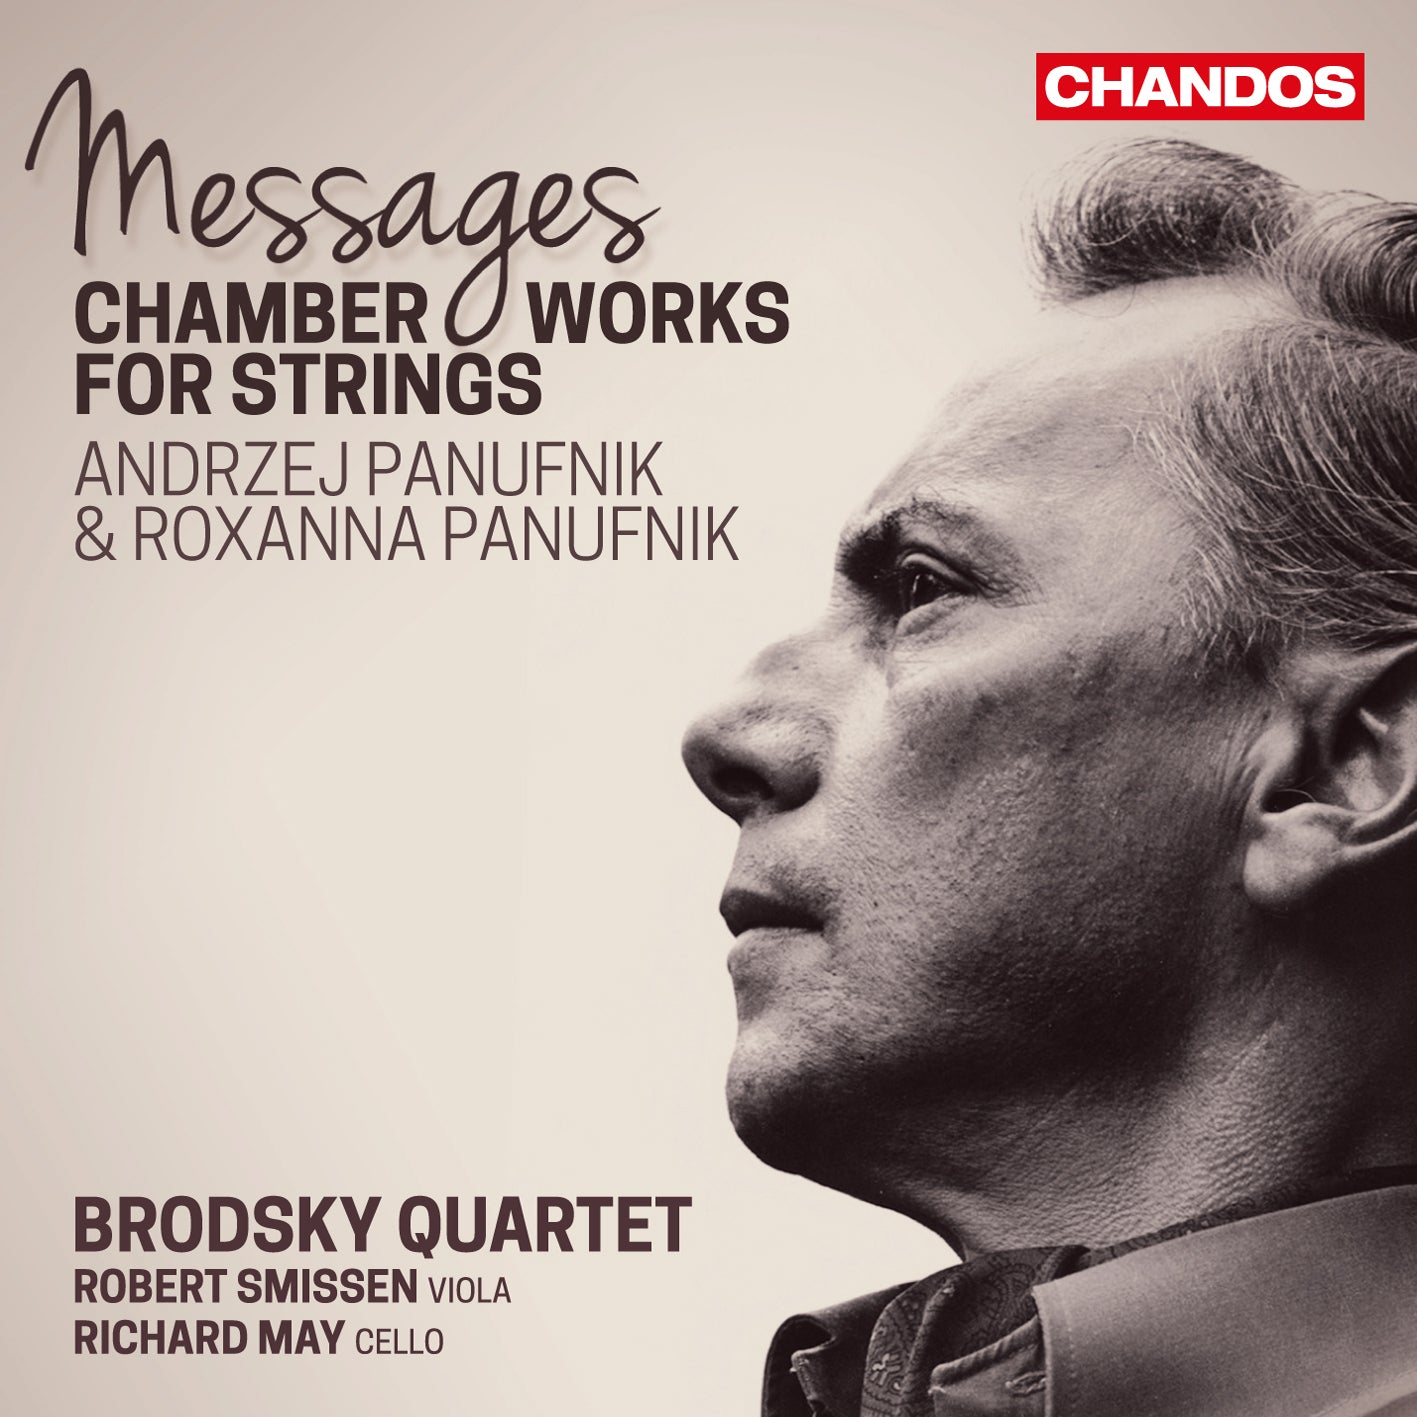 Messages - Andrzej Panufnik: Chamber Works for Strings / Brodsky Quartet